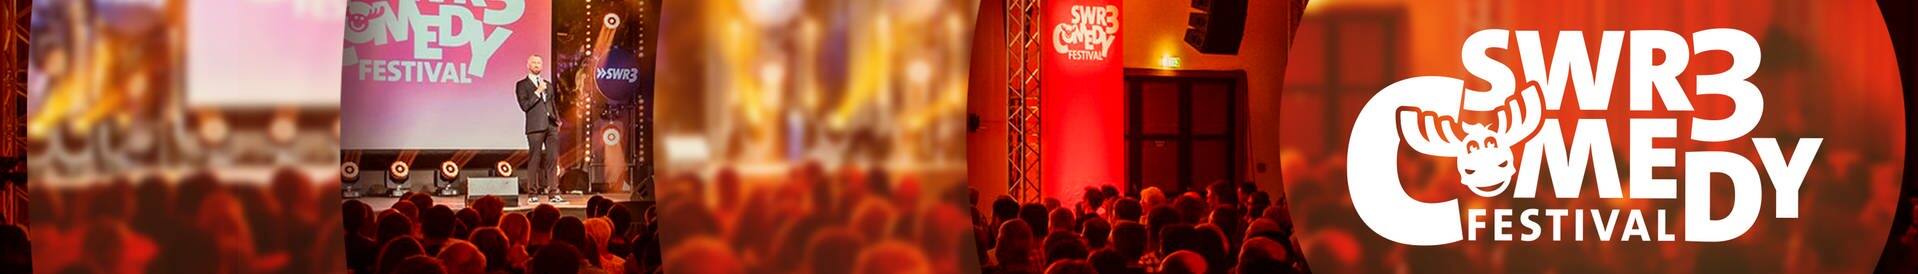 SWR3 Comedy Festival (Foto: SWR3)